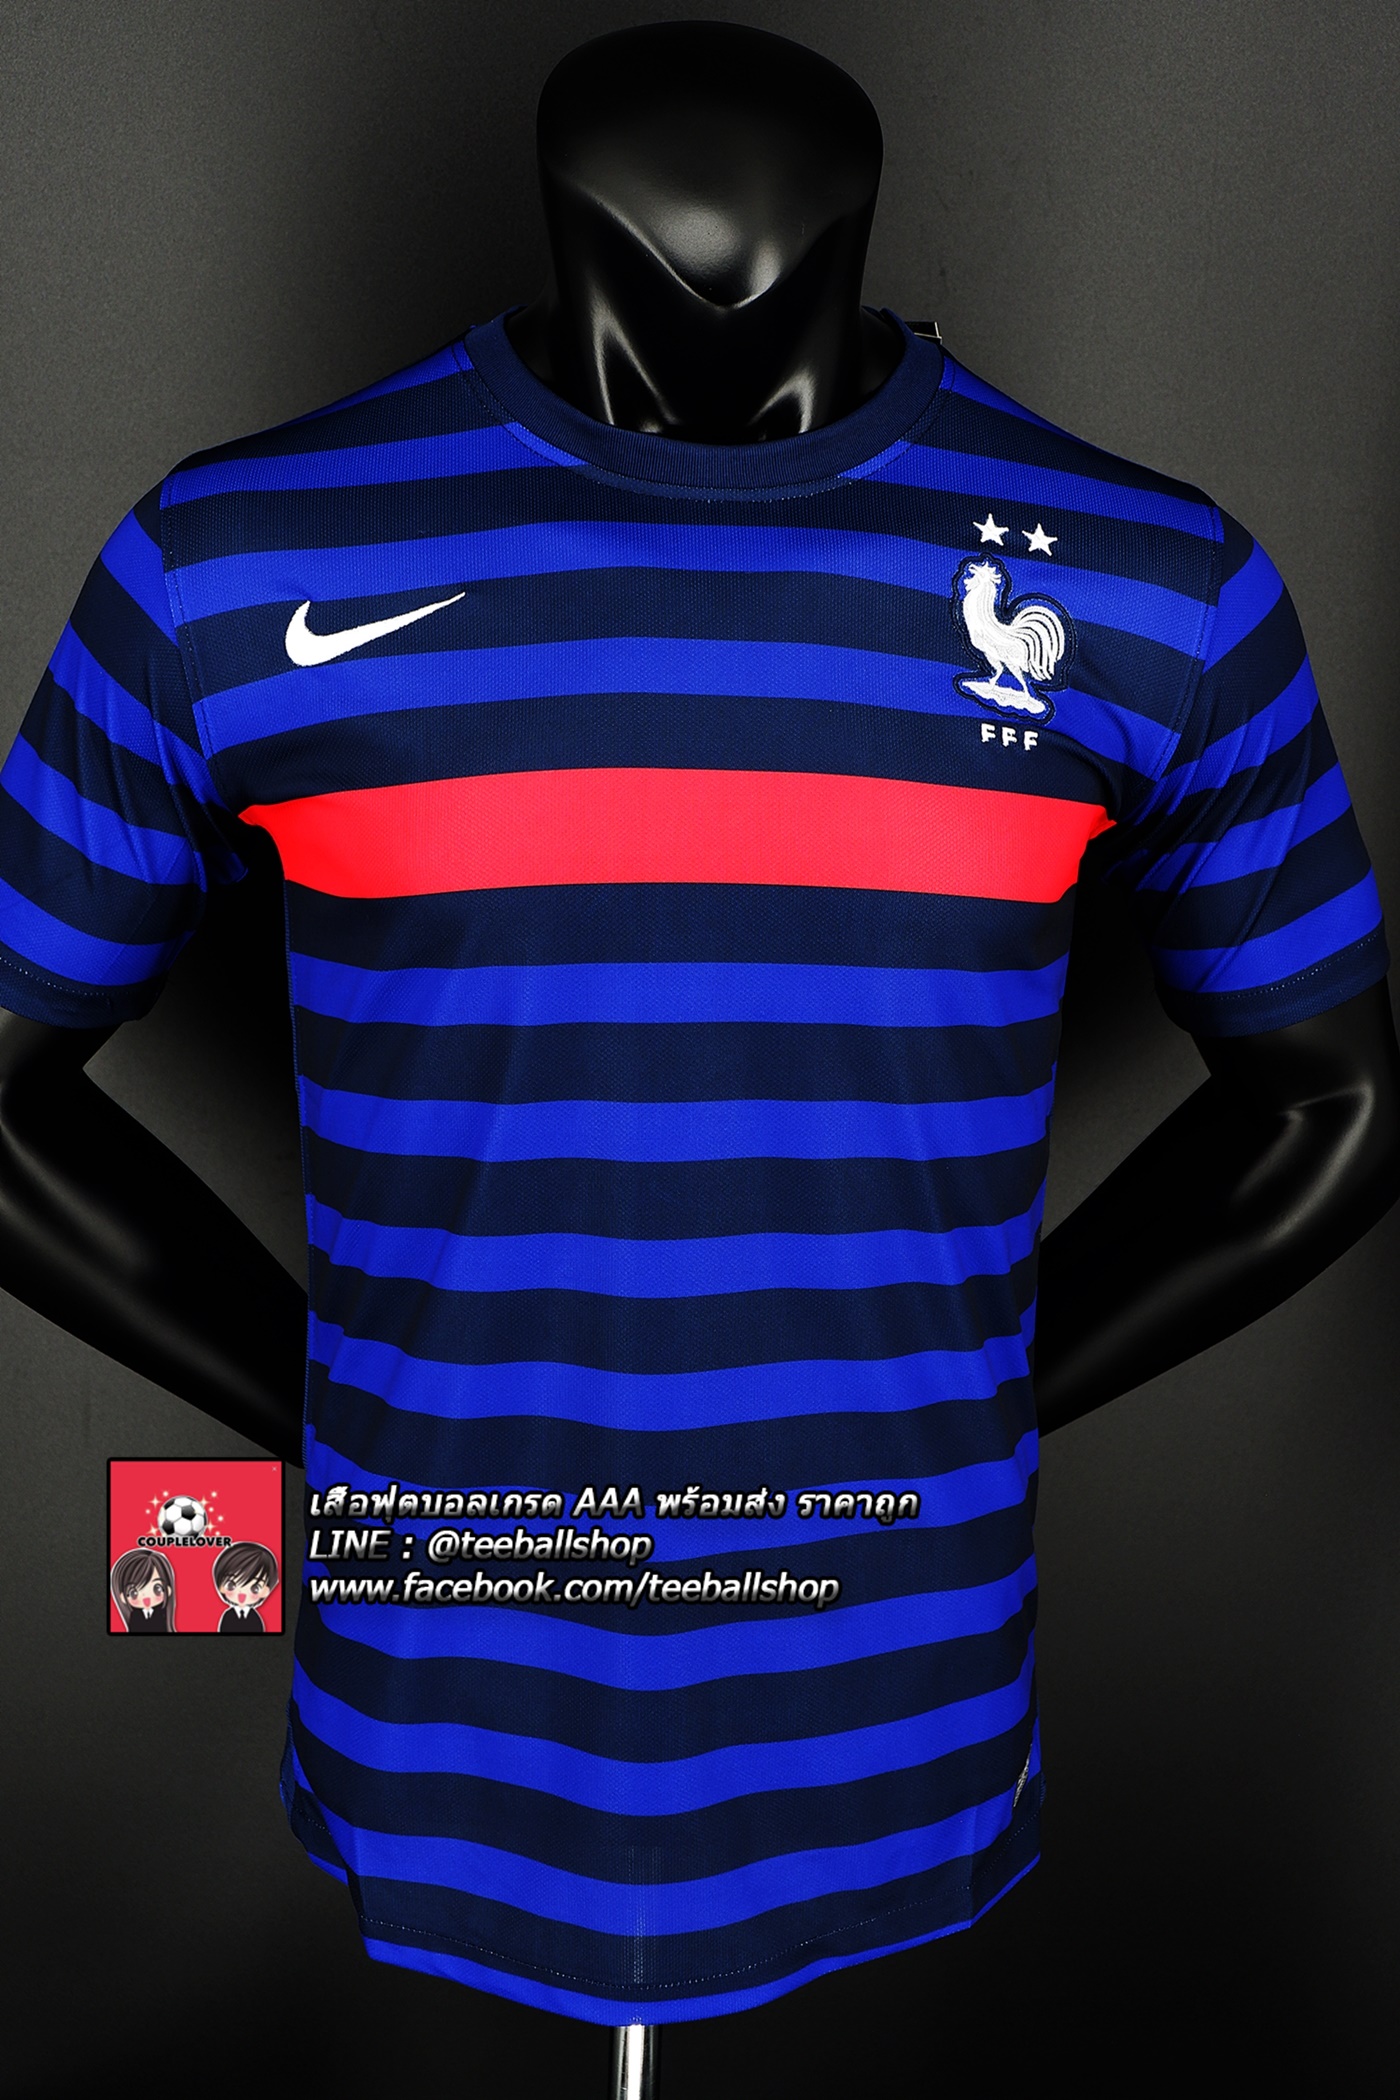 เสื้อฟุตบอลยูโรทีมชาติ ฝรั่งเศษชุดเหย้าปี 2020/21 France Home Jersey Home 2020/21 (ภาพถ่ายจากของจริง) Top Thai Quality football soccer jerseys shirts AAA